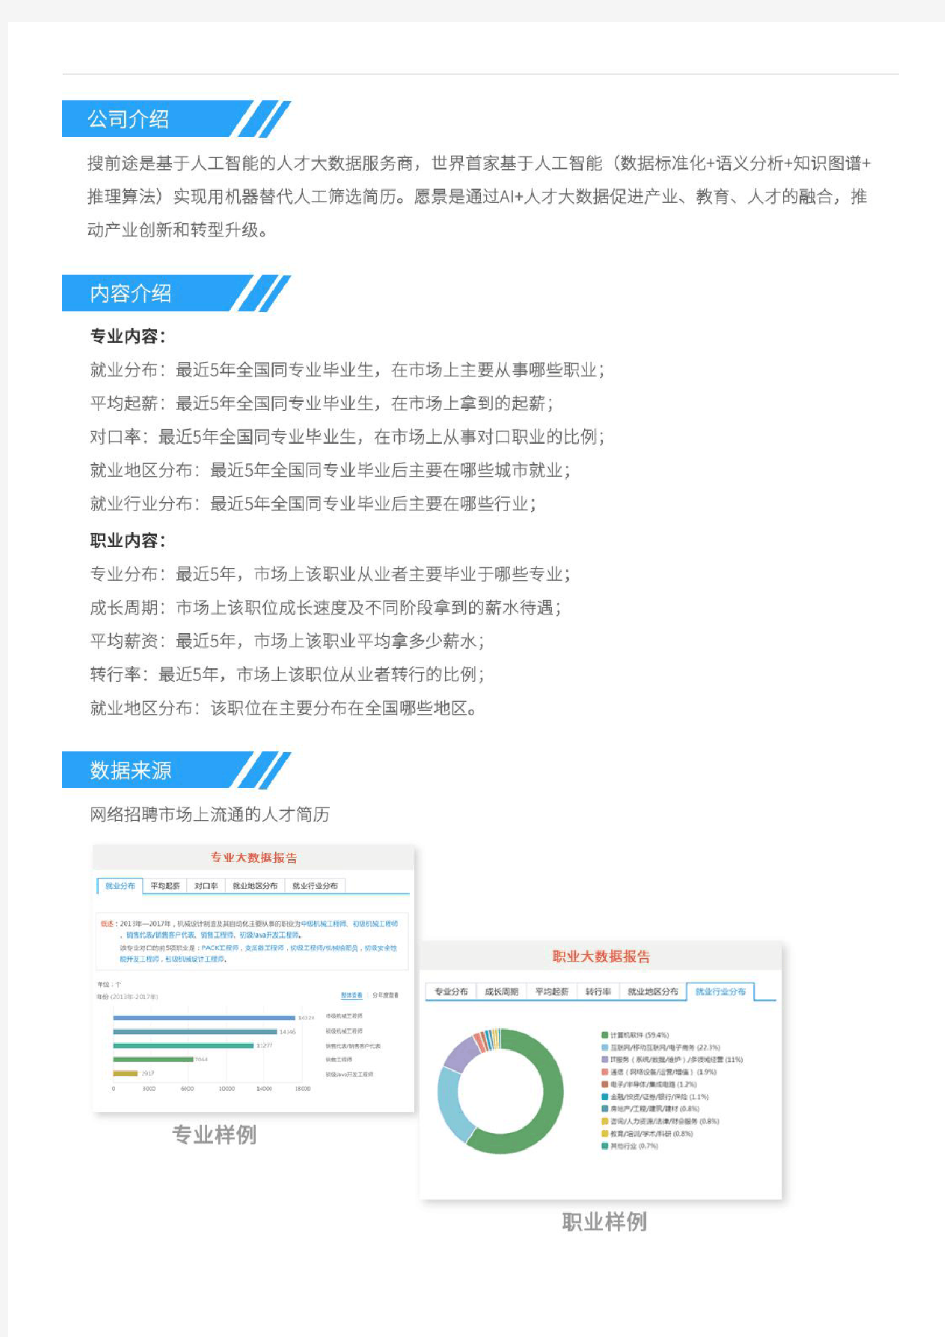 2013-2017年上海交通大学法学专业毕业生就业大数据报告